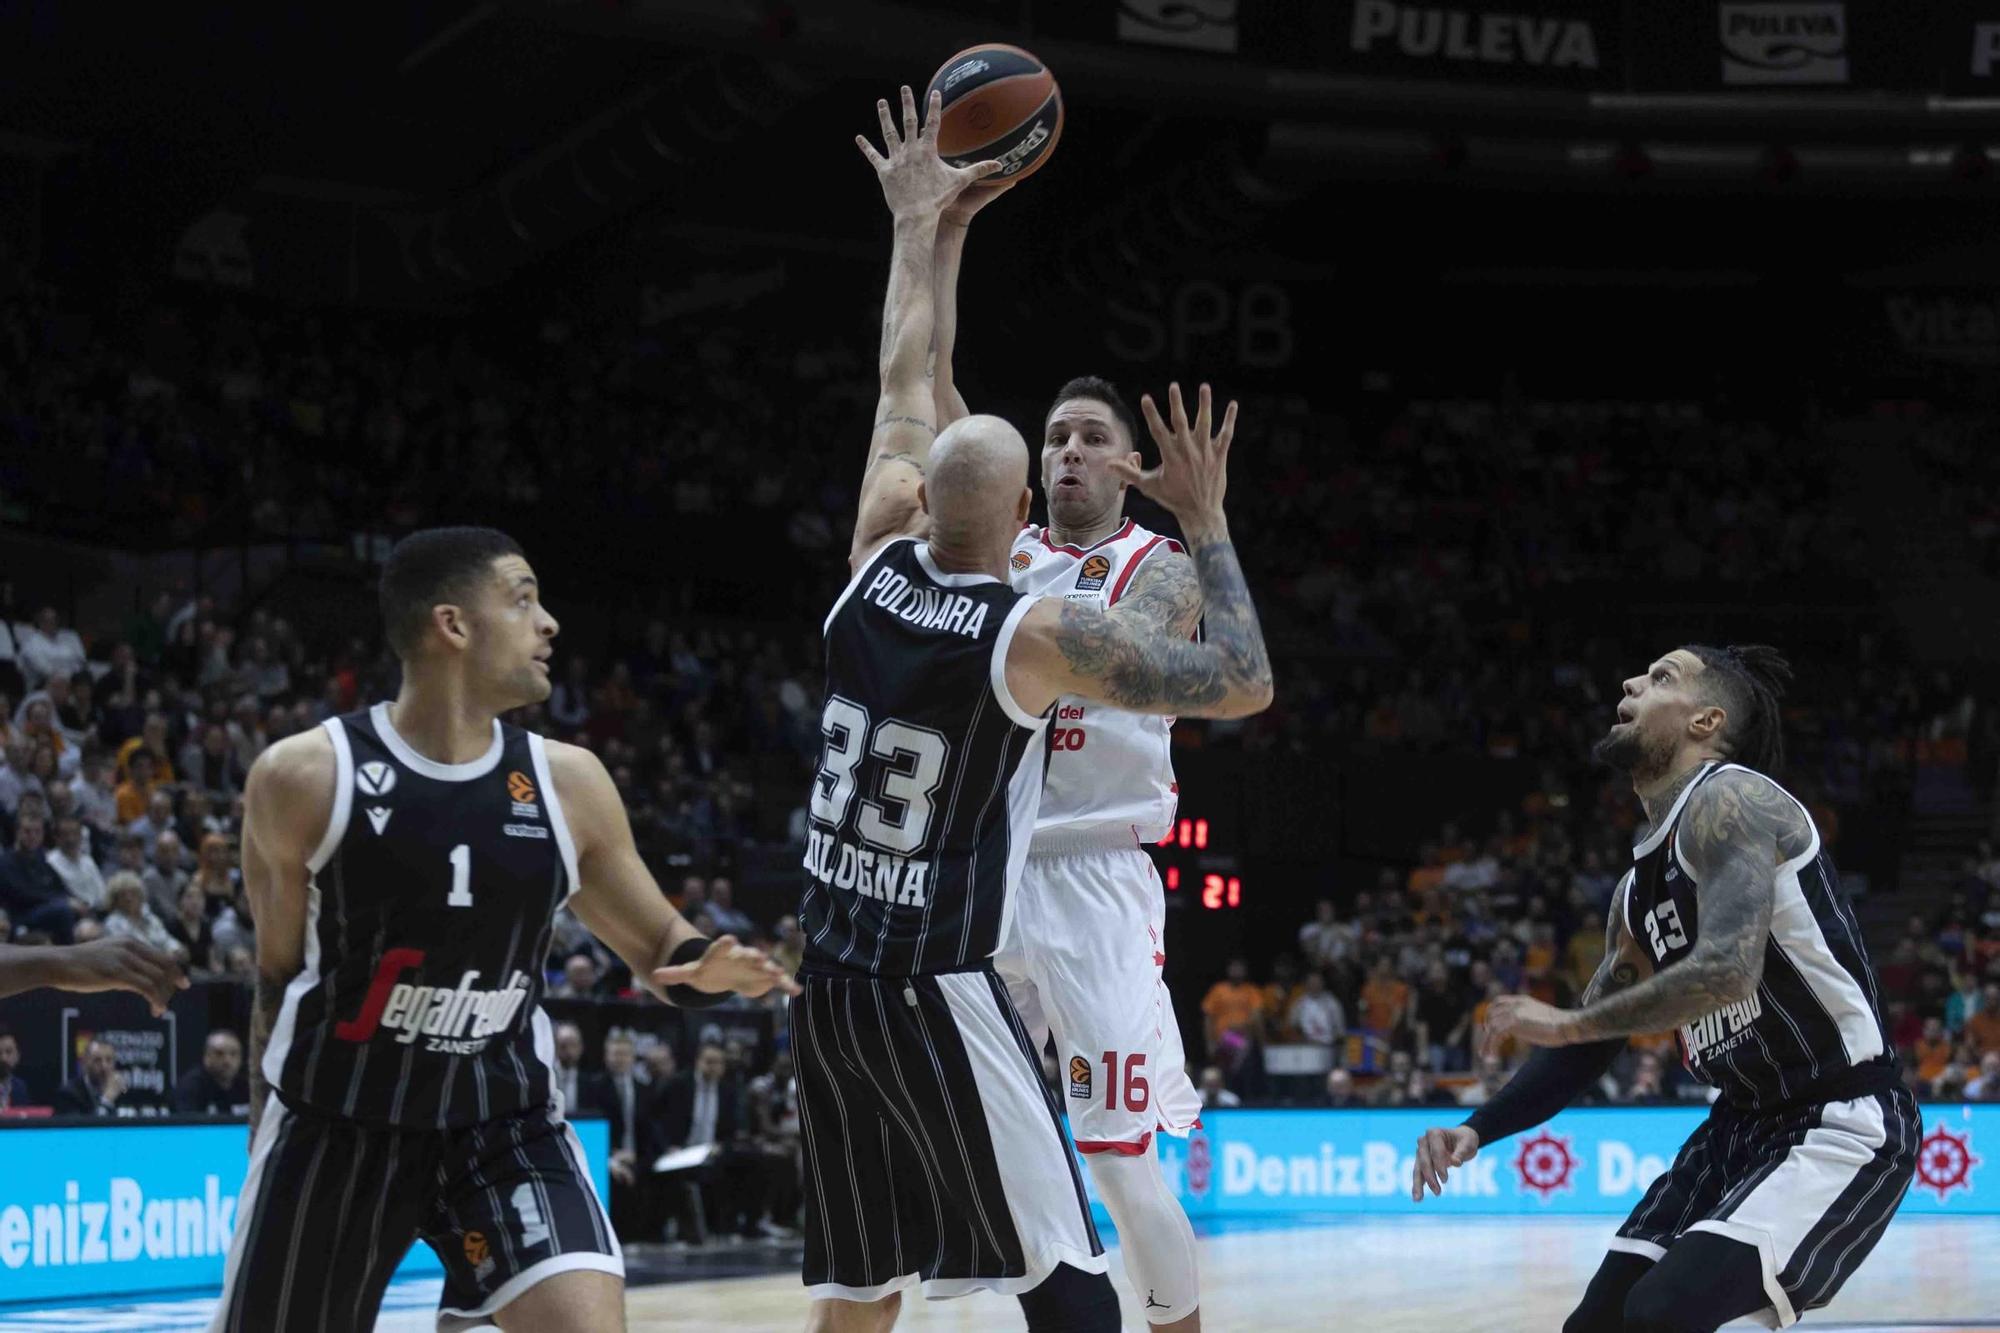 Parido Euroliga Valencia Basket- Vortus Bolonia